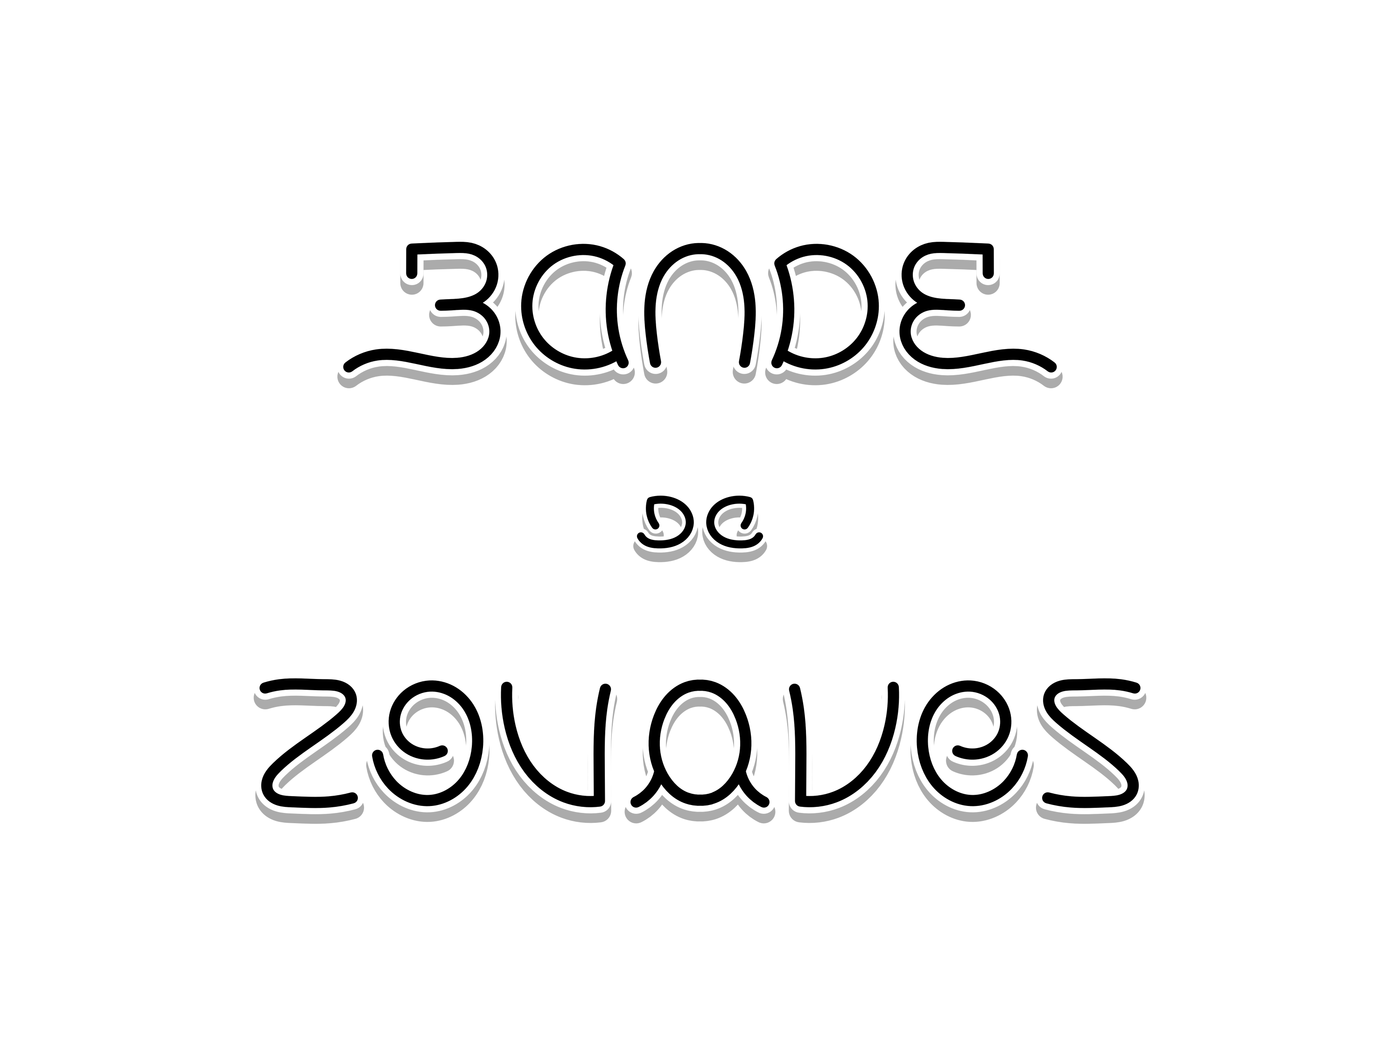 ambigramme Bande de zouaves